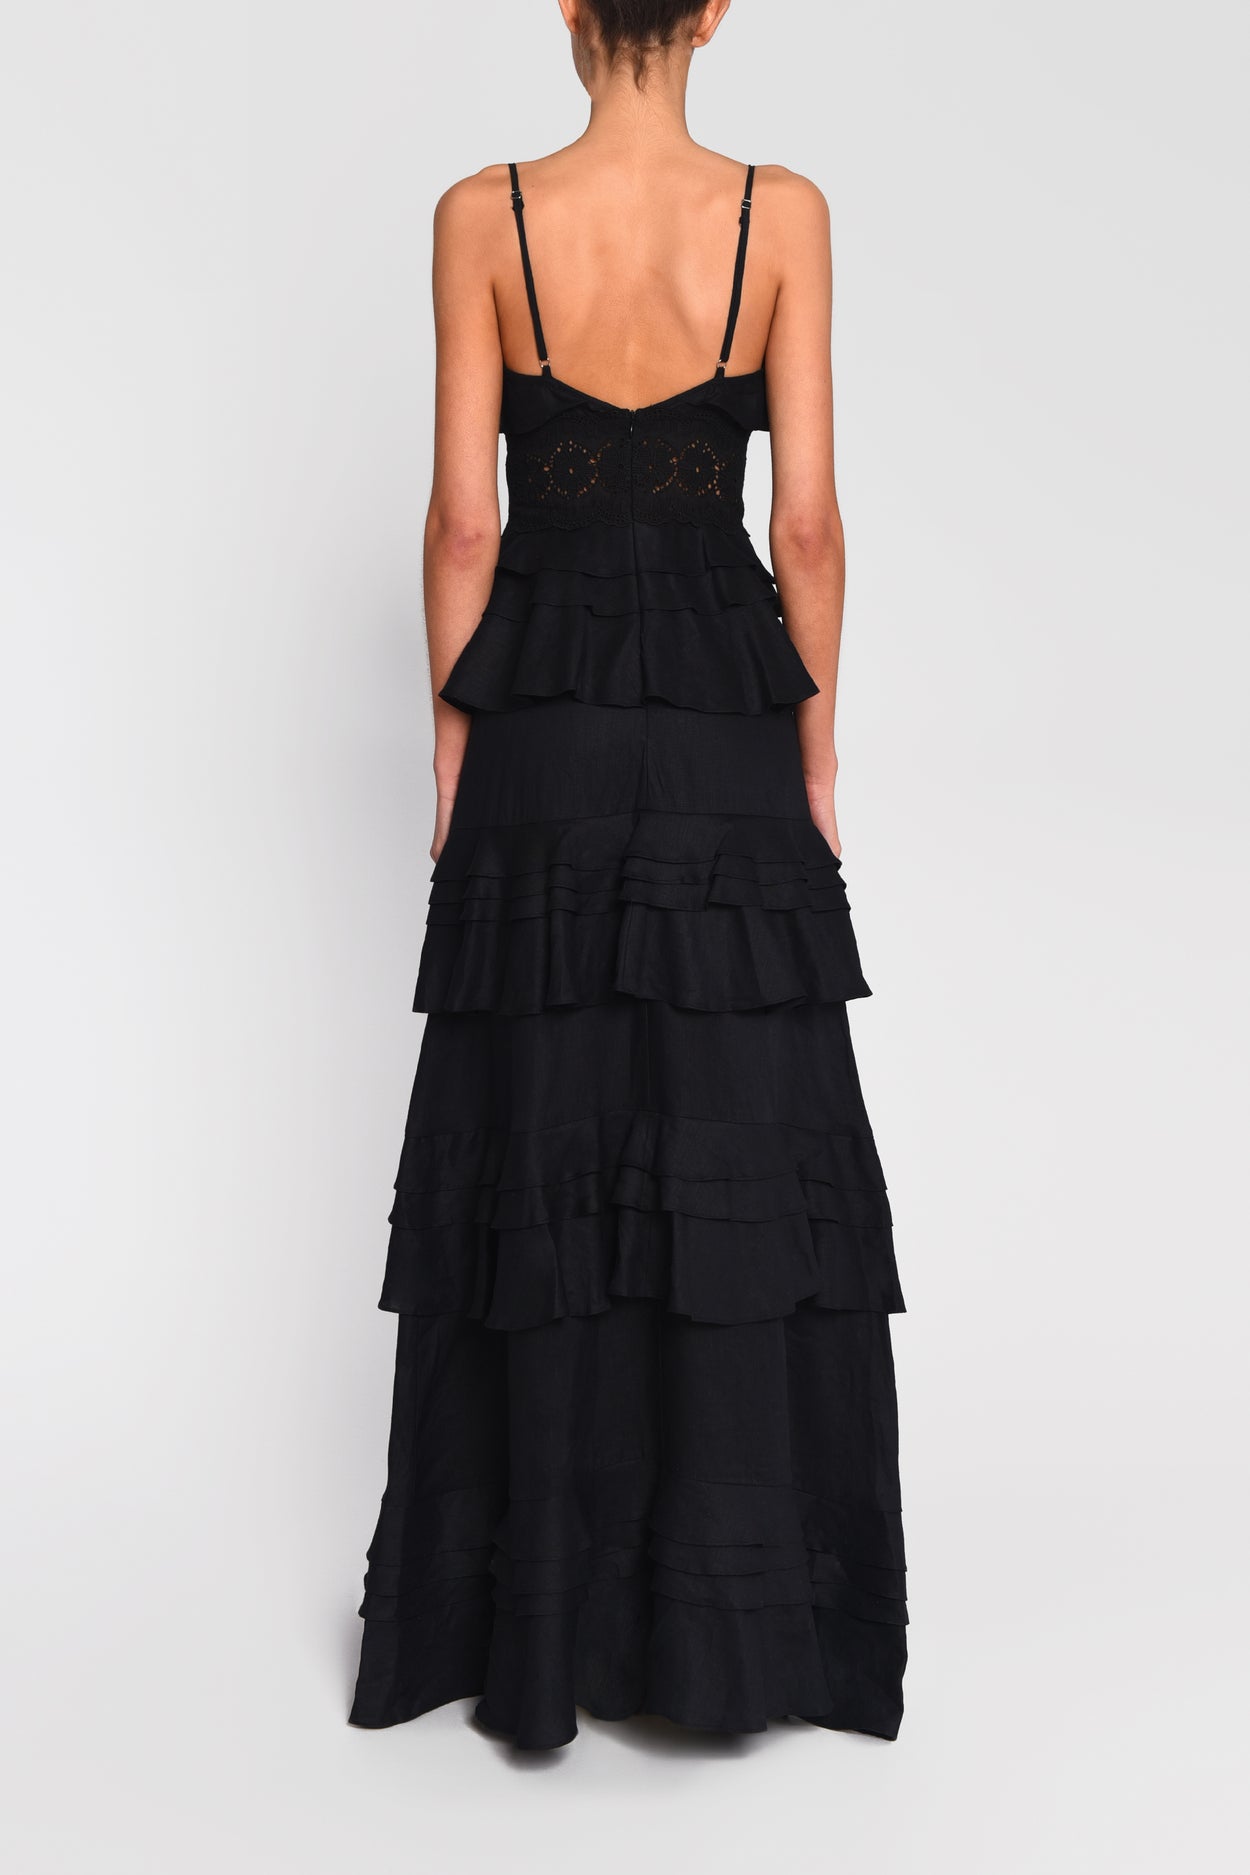 tiered black maxi dress